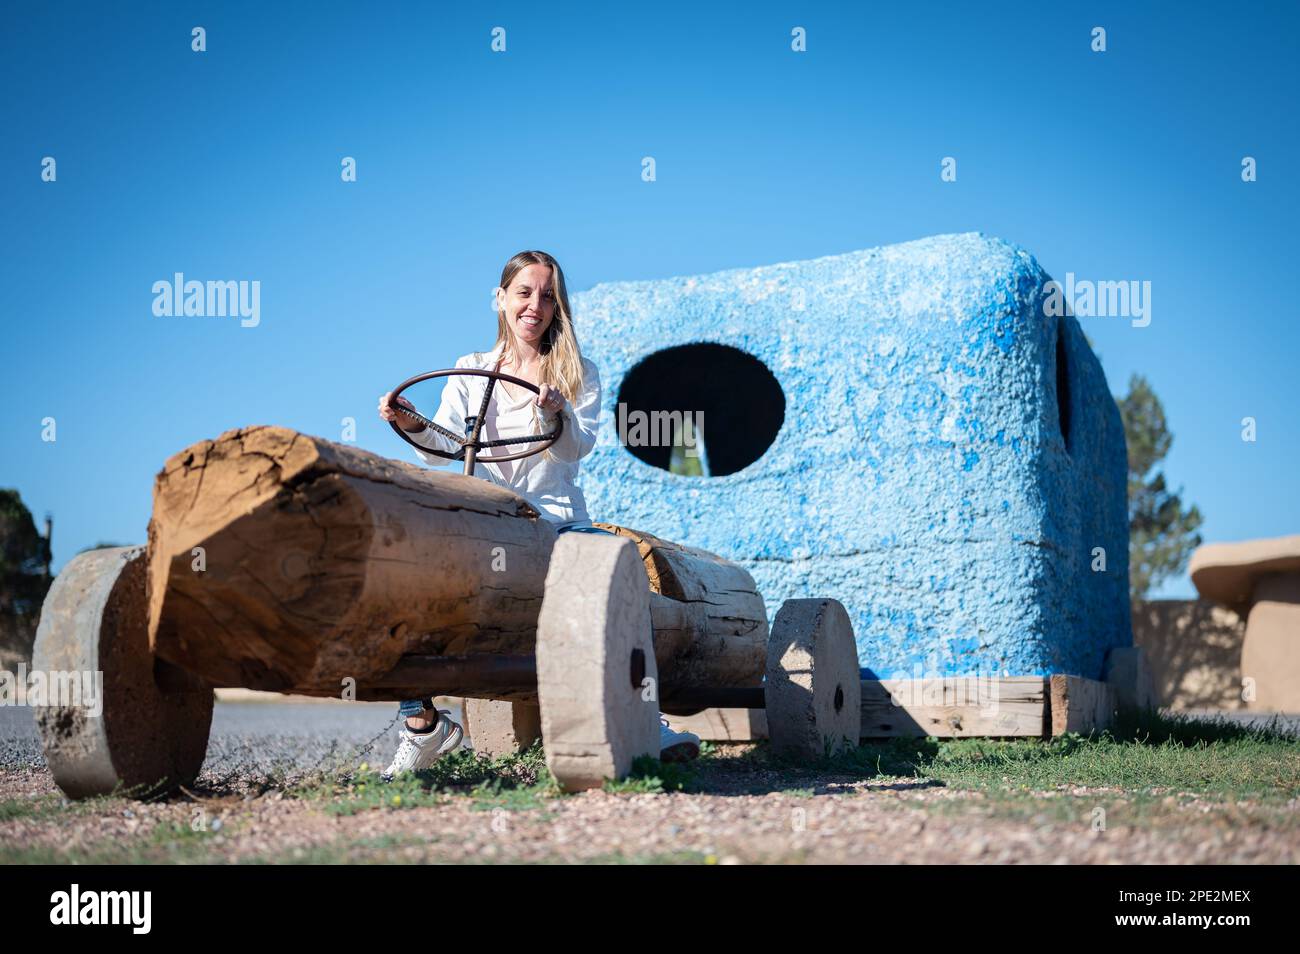 Ragazza giovane in sella ad un'automobile fatta di legno Foto Stock